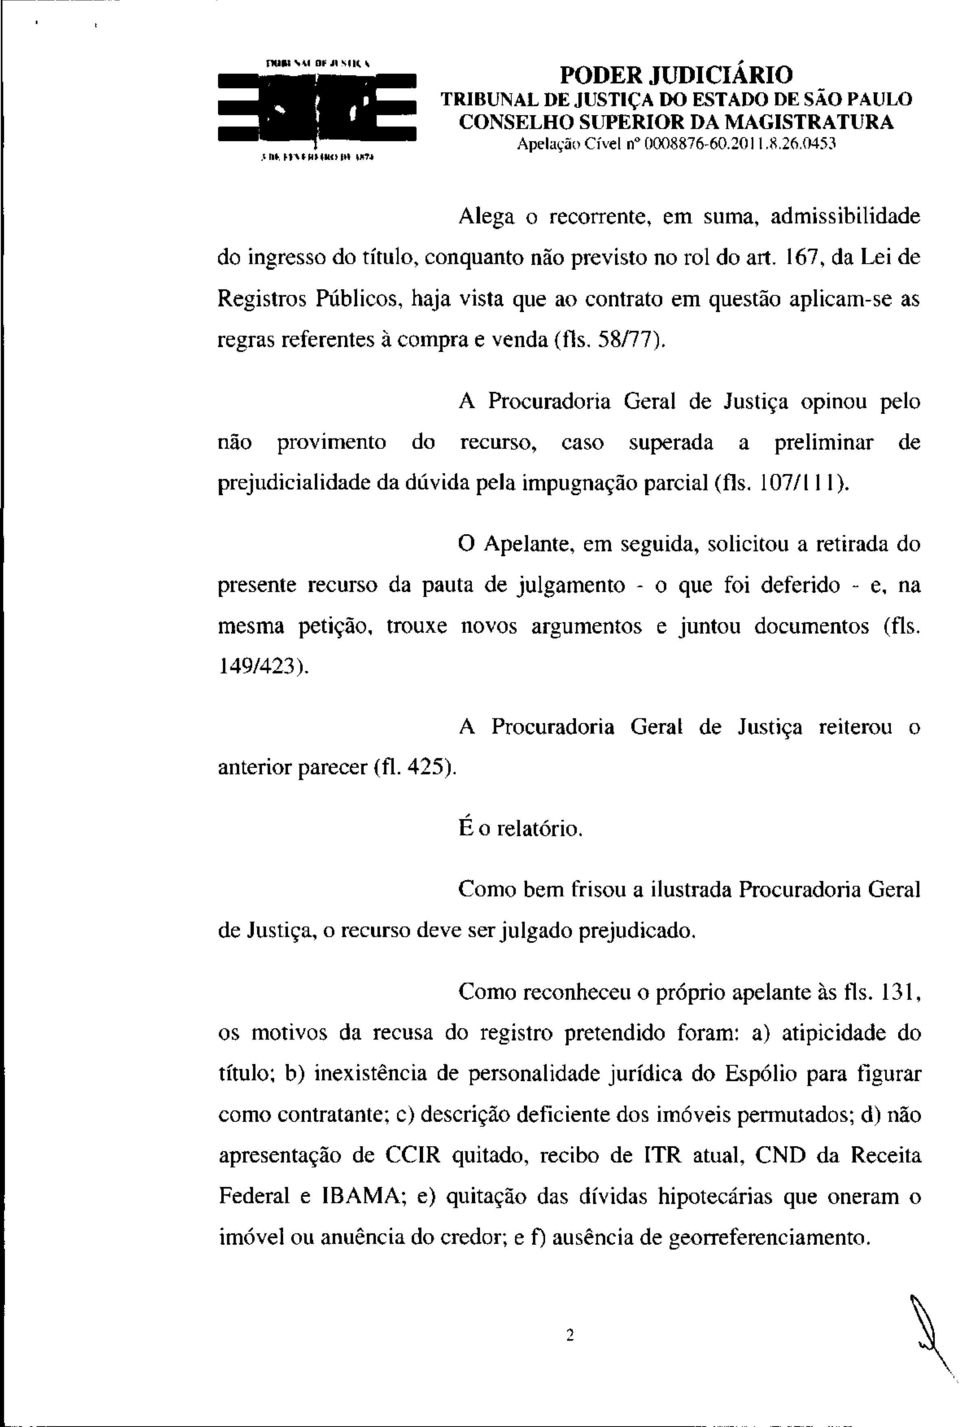 A Procuradoria Geral de Justiça opinou pelo não provimento do recurso, caso superada a preliminar de prejudicialidade da dúvida pela impugnação parcial (fls. 107/111).